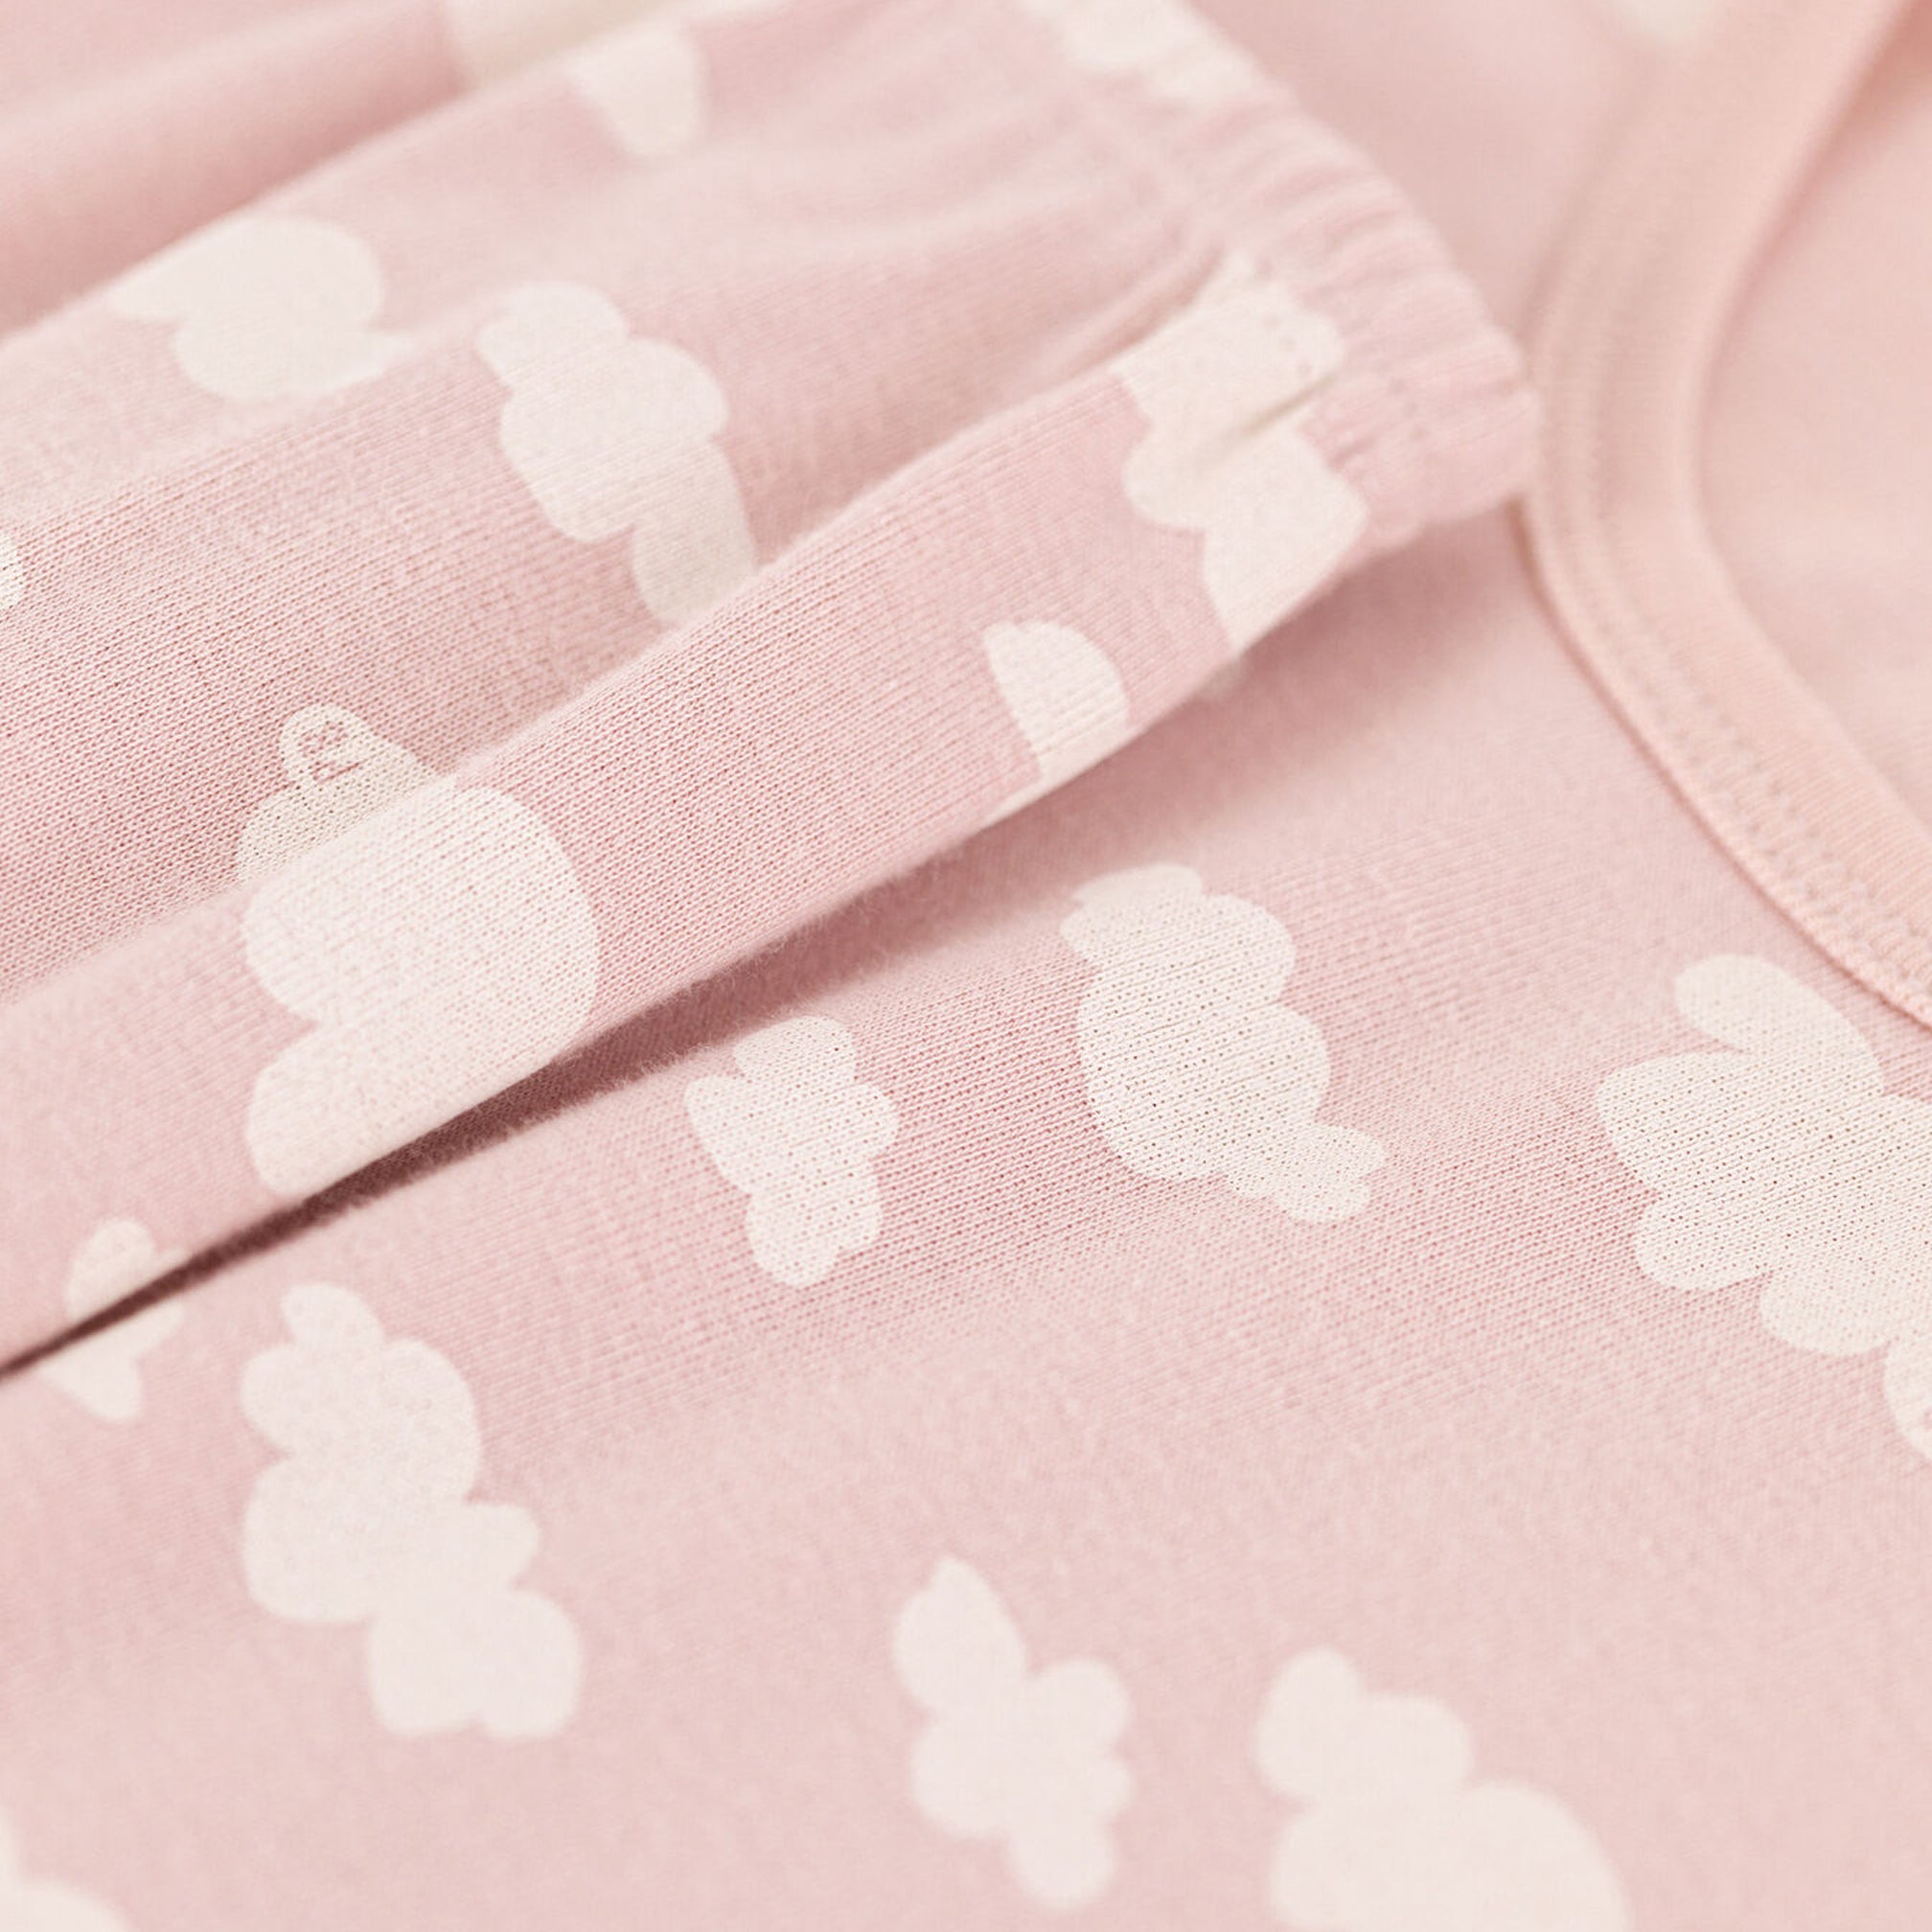 Petit Bateau Snugfit Cloud Pyjamas